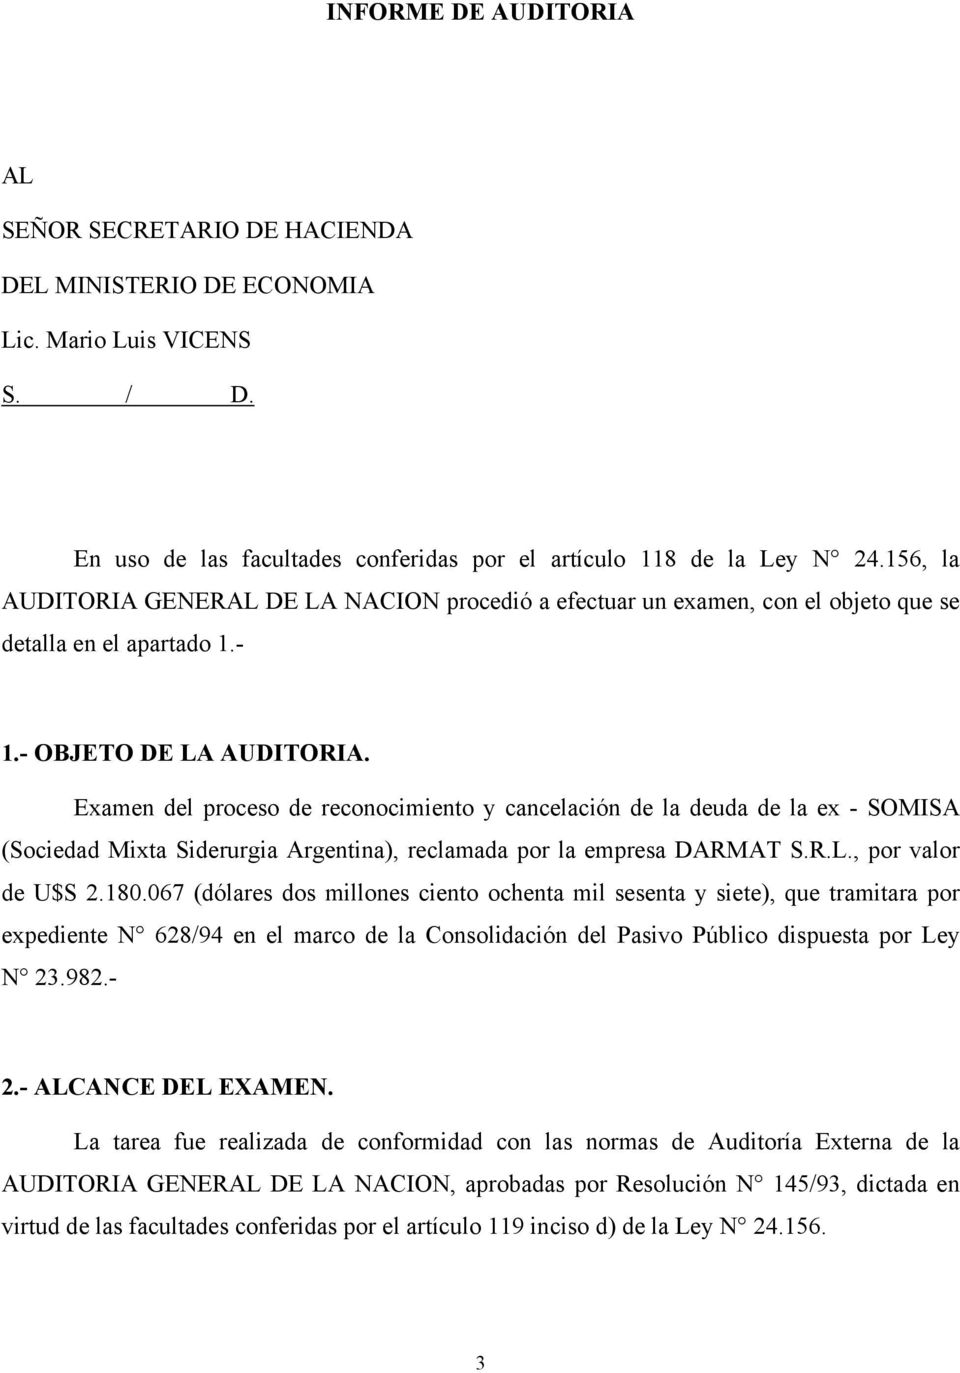 Examen del proceso de reconocimiento y cancelación de la deuda de la ex - SOMISA (Sociedad Mixta Siderurgia Argentina), reclamada por la empresa DARMAT S.R.L., por valor de U$S 2.180.